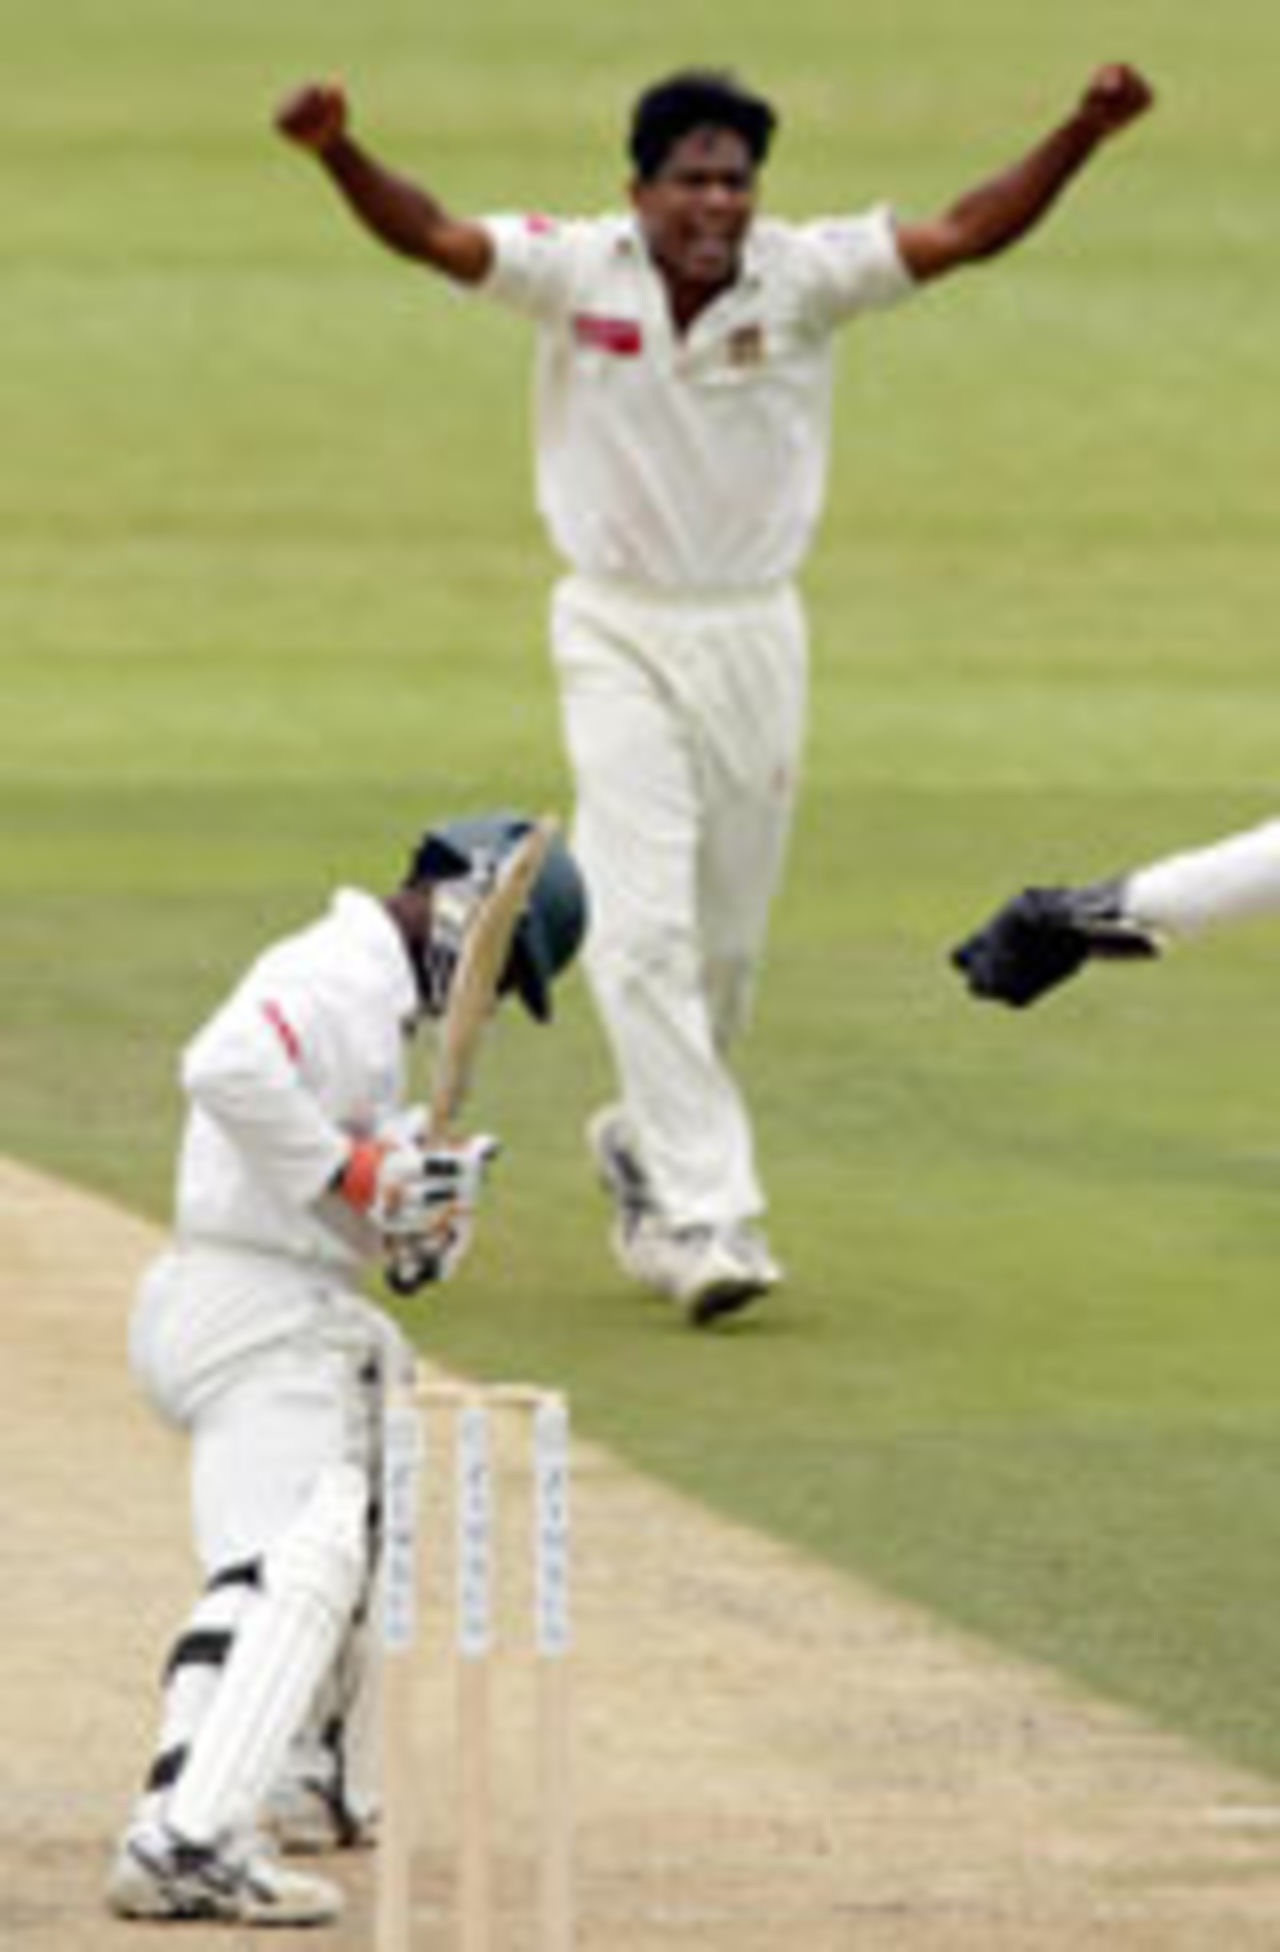 Mohammad Rafique celebrates the wicket of Tatenda Taibu, Zimbabwe v Bangladesh, 1st Test, Harare, Febraury 20, 2004